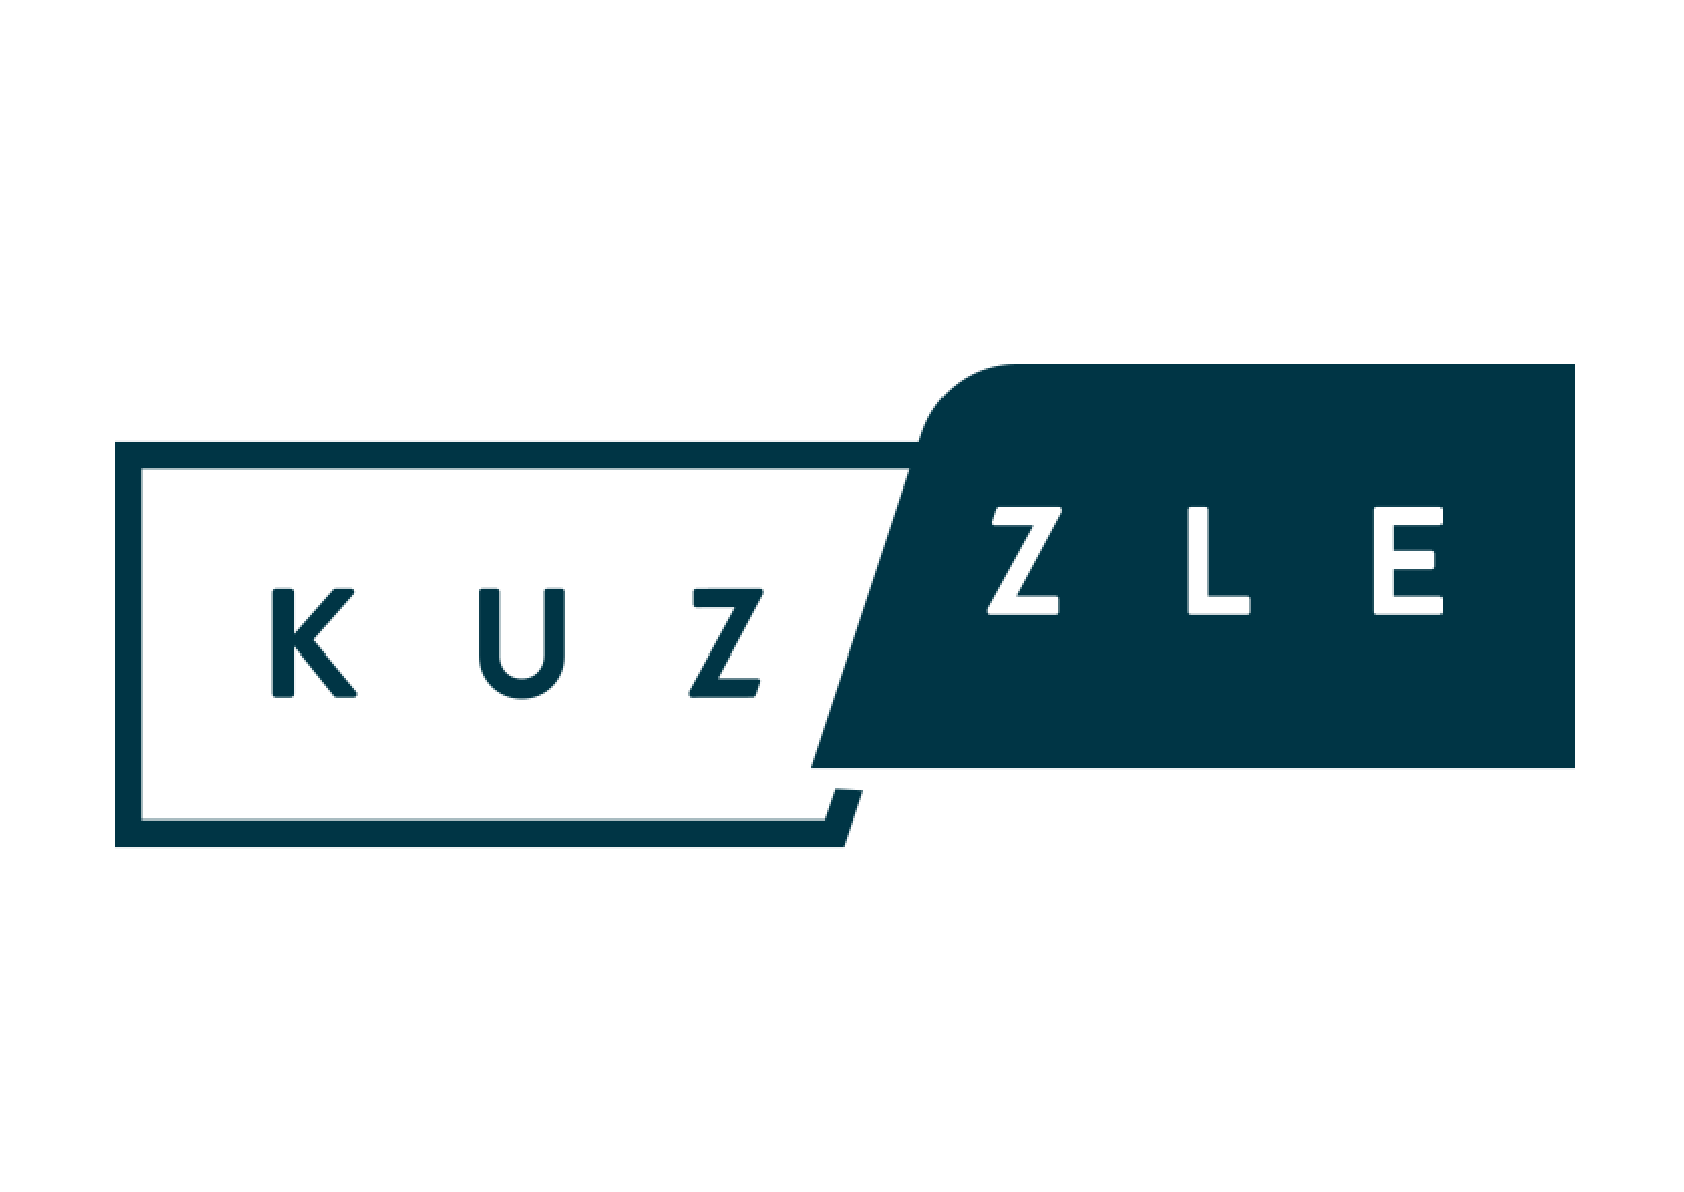 Kuzzle